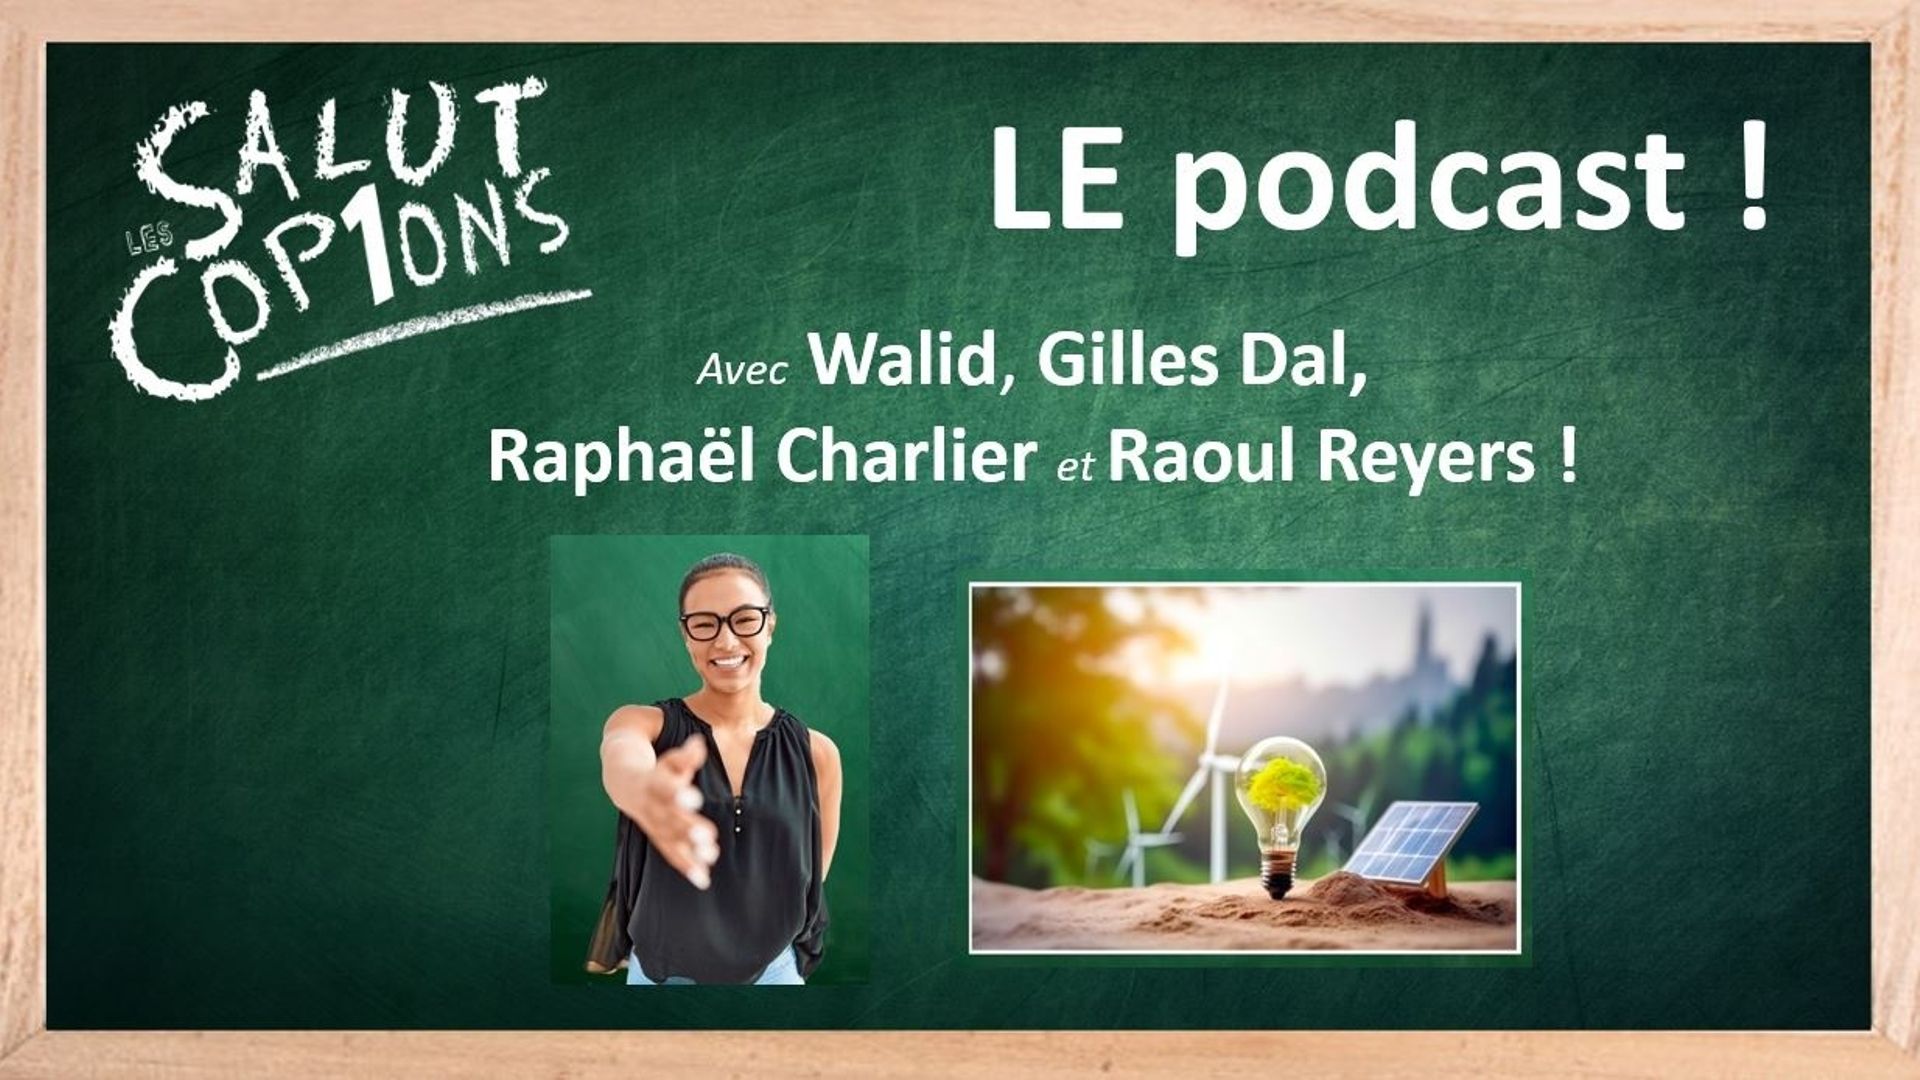 Salut les copions - Votre podcast humour sur La1ère